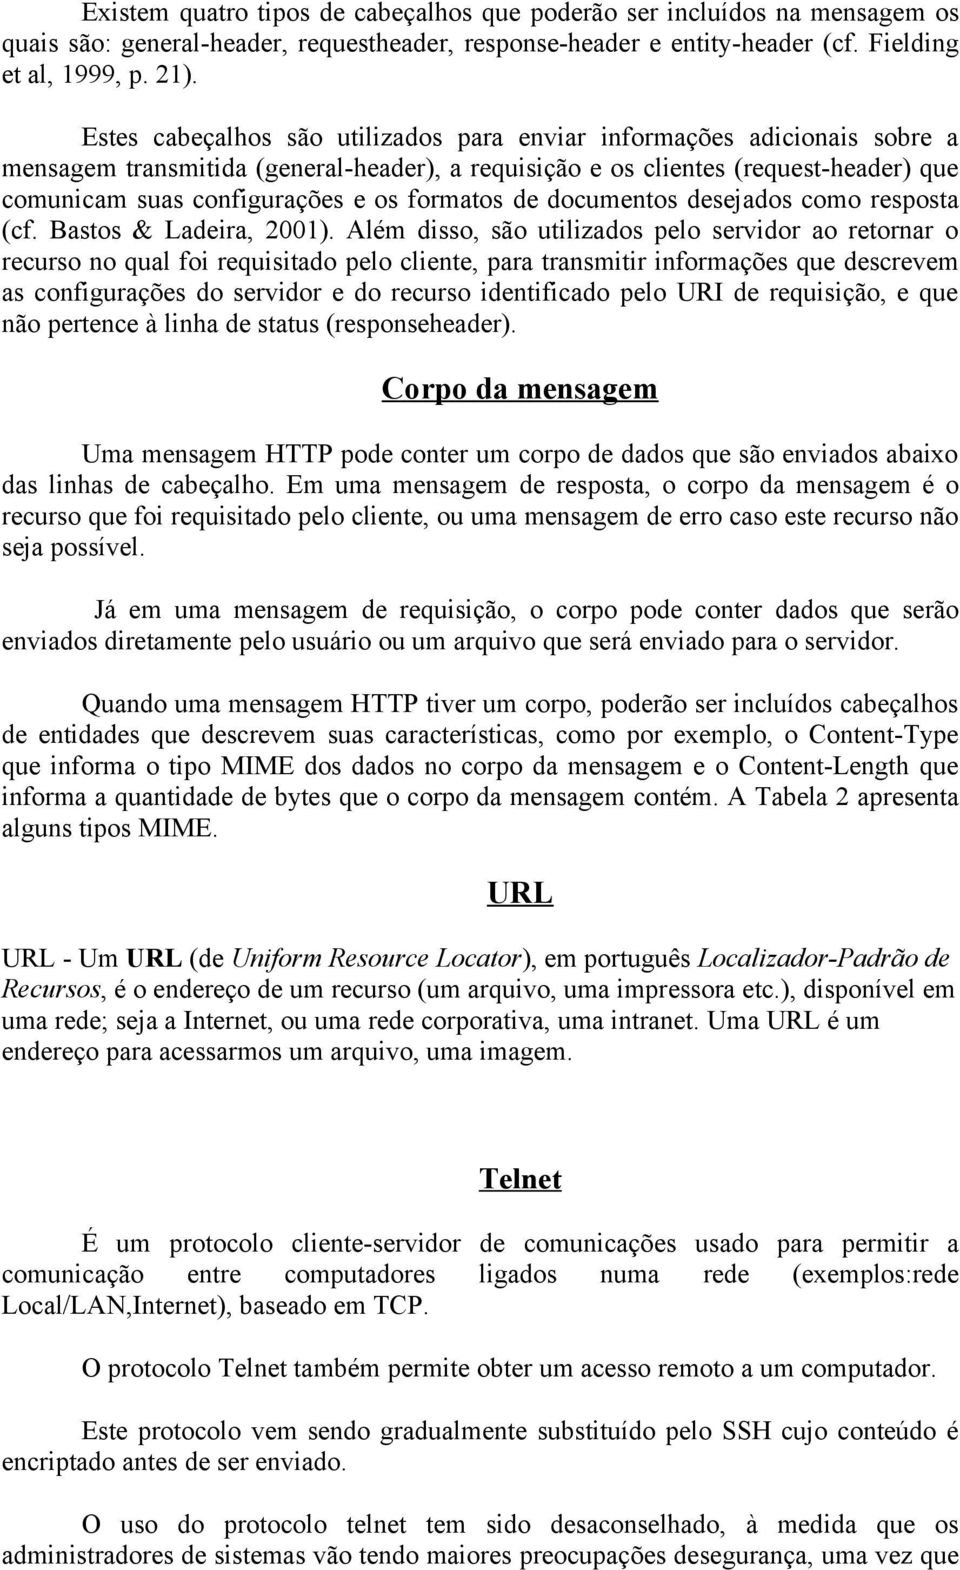 formatos de documentos desejados como resposta (cf. Bastos & Ladeira, 2001).